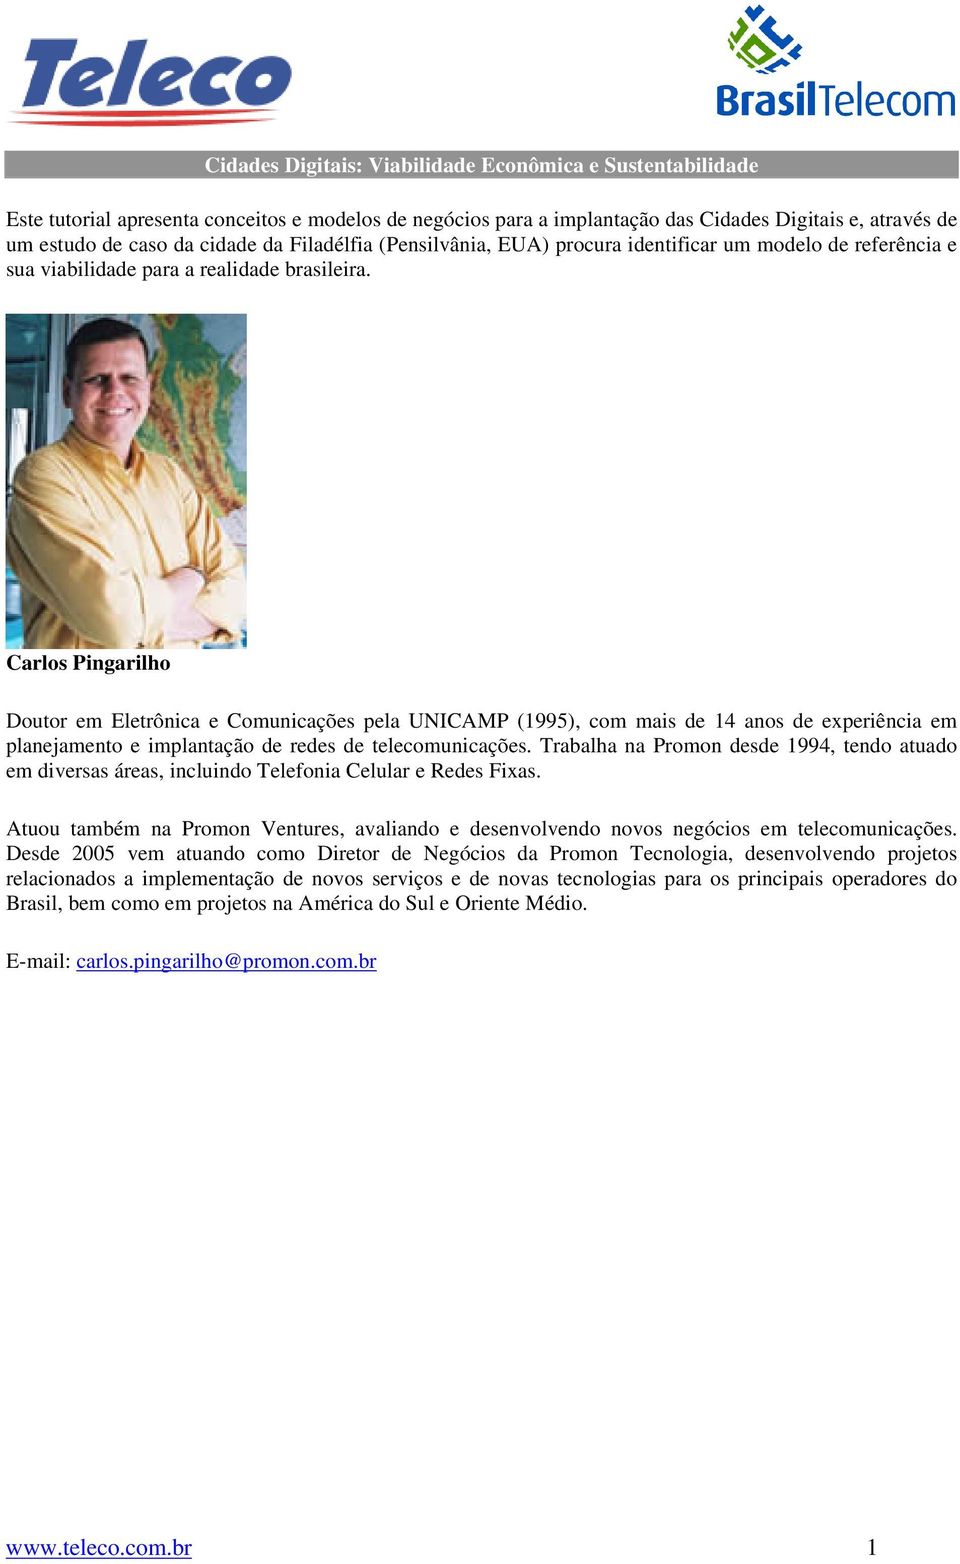 Carlos Pingarilho Doutor em Eletrônica e Comunicações pela UNICAMP (1995), com mais de 14 anos de experiência em planejamento e implantação de redes de telecomunicações.